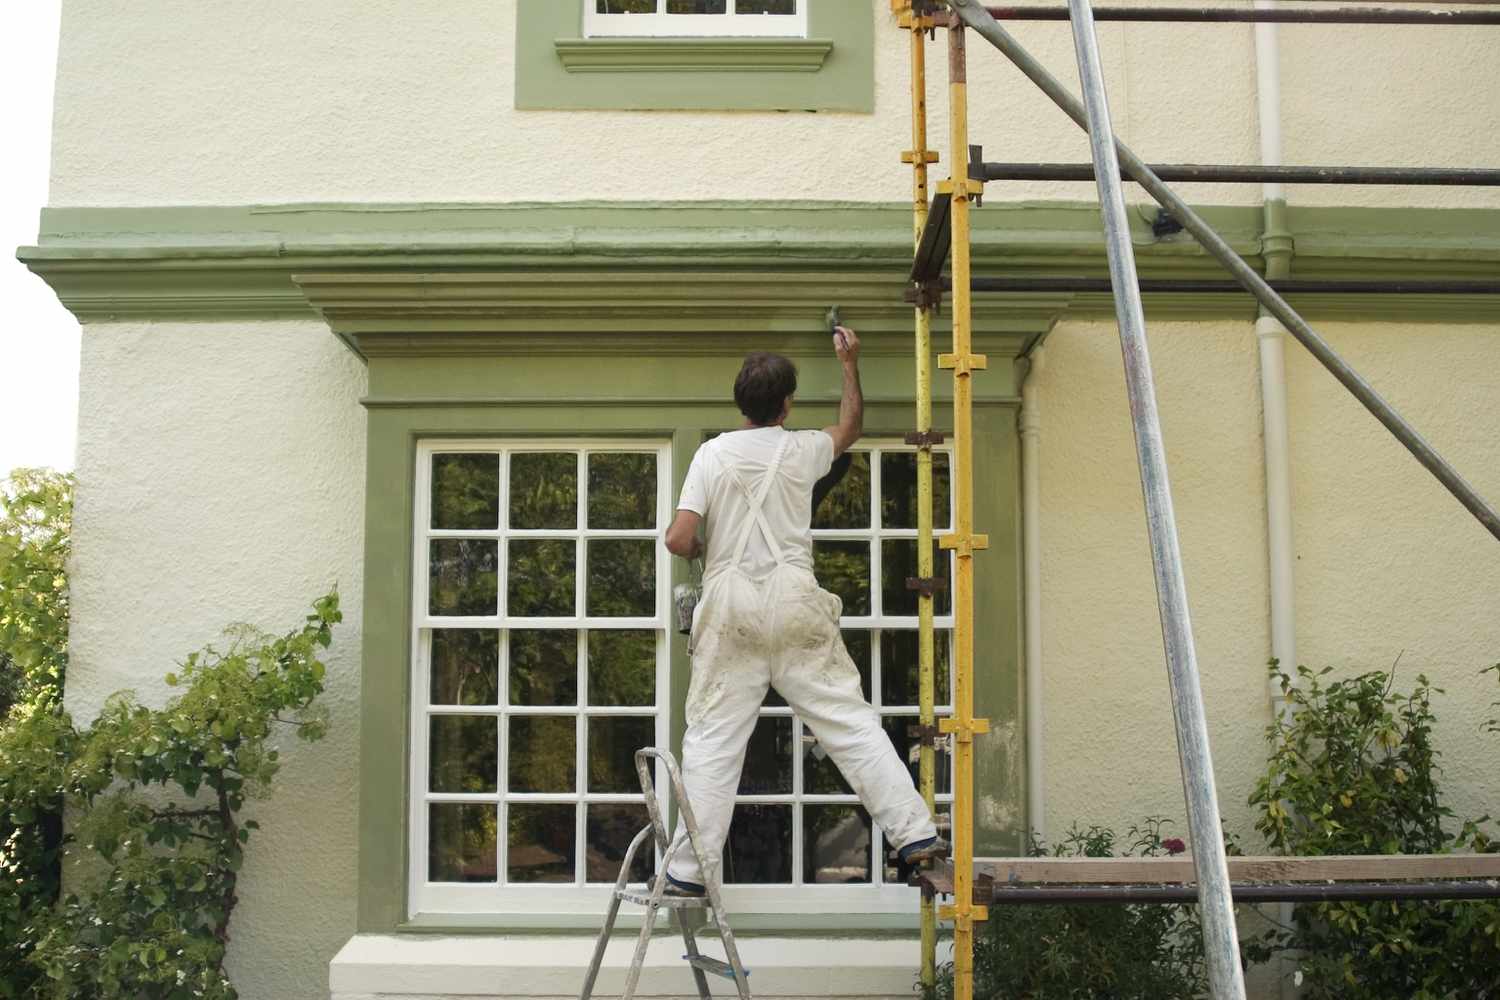 Hausmaler auf dem Gerüst beim Streichen der grünen Außenverkleidung des Hauses 